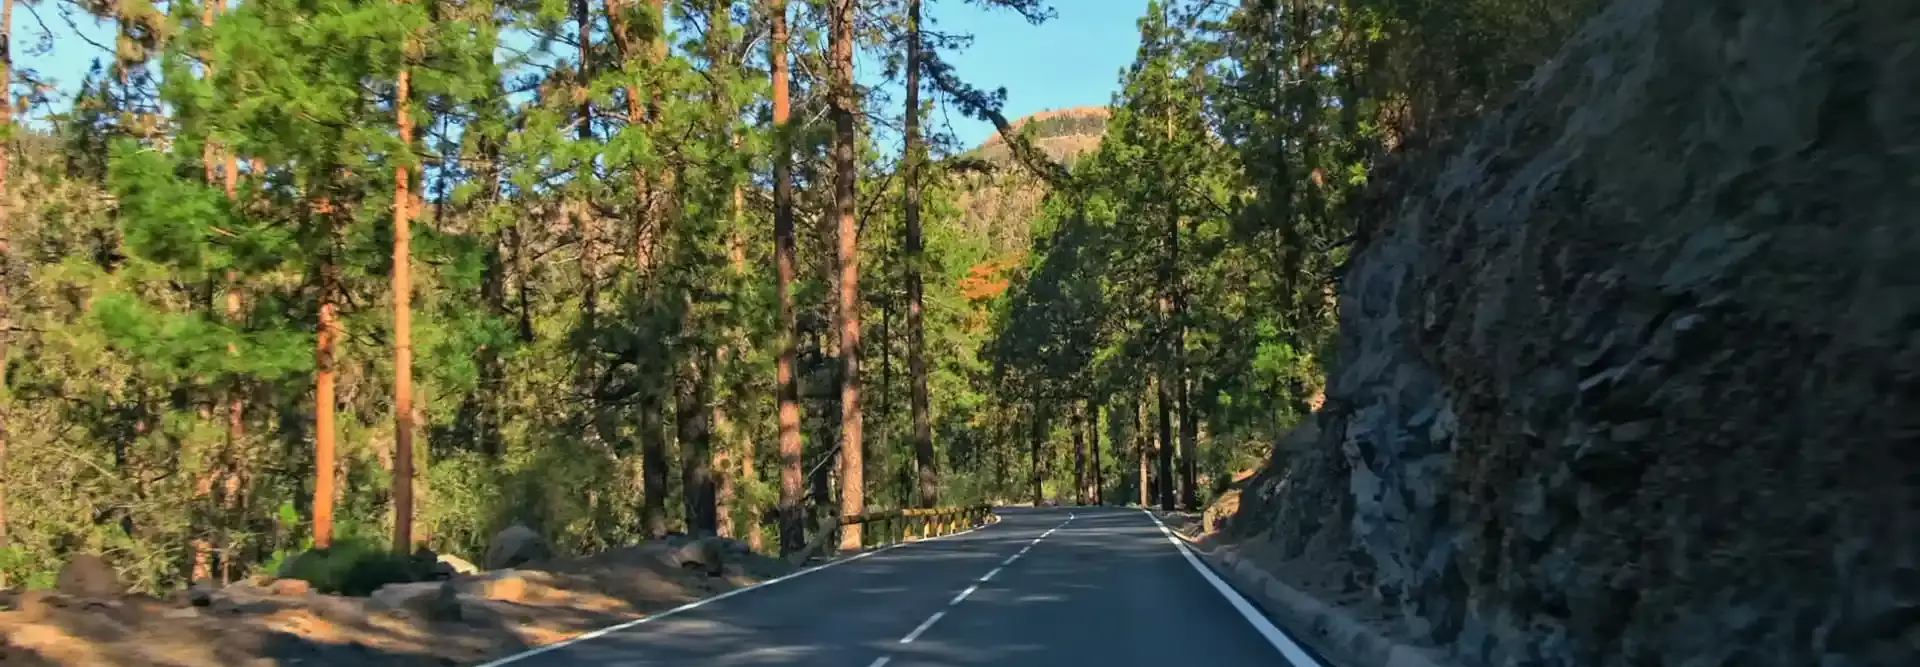 Estrada pela floresta